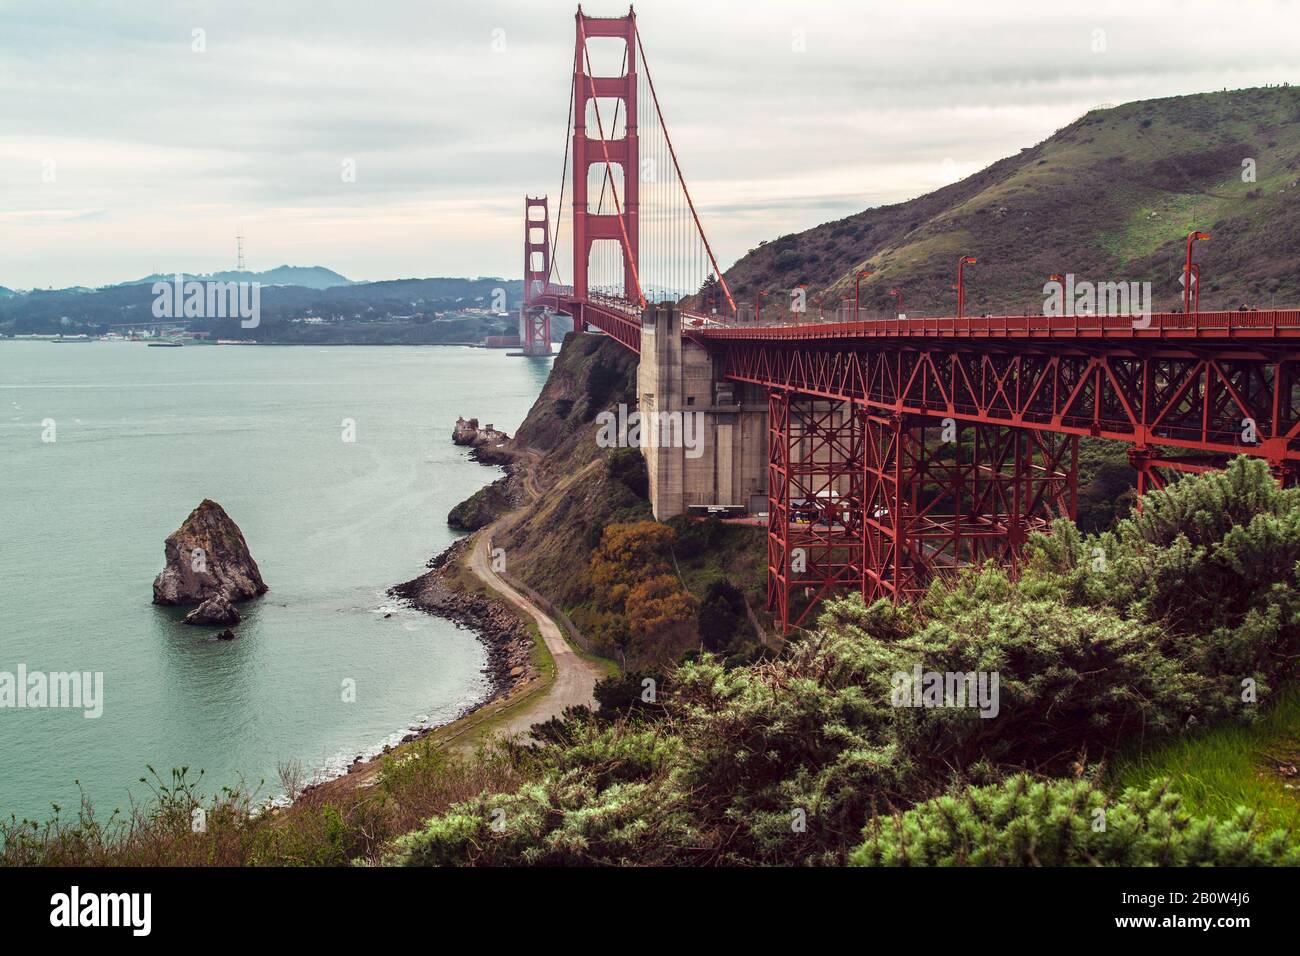 Simplement l'une des structures les plus impressionnantes de tous les temps. Agréable et magnifique dans tous les aspects, le Golden Gate Bridge Banque D'Images